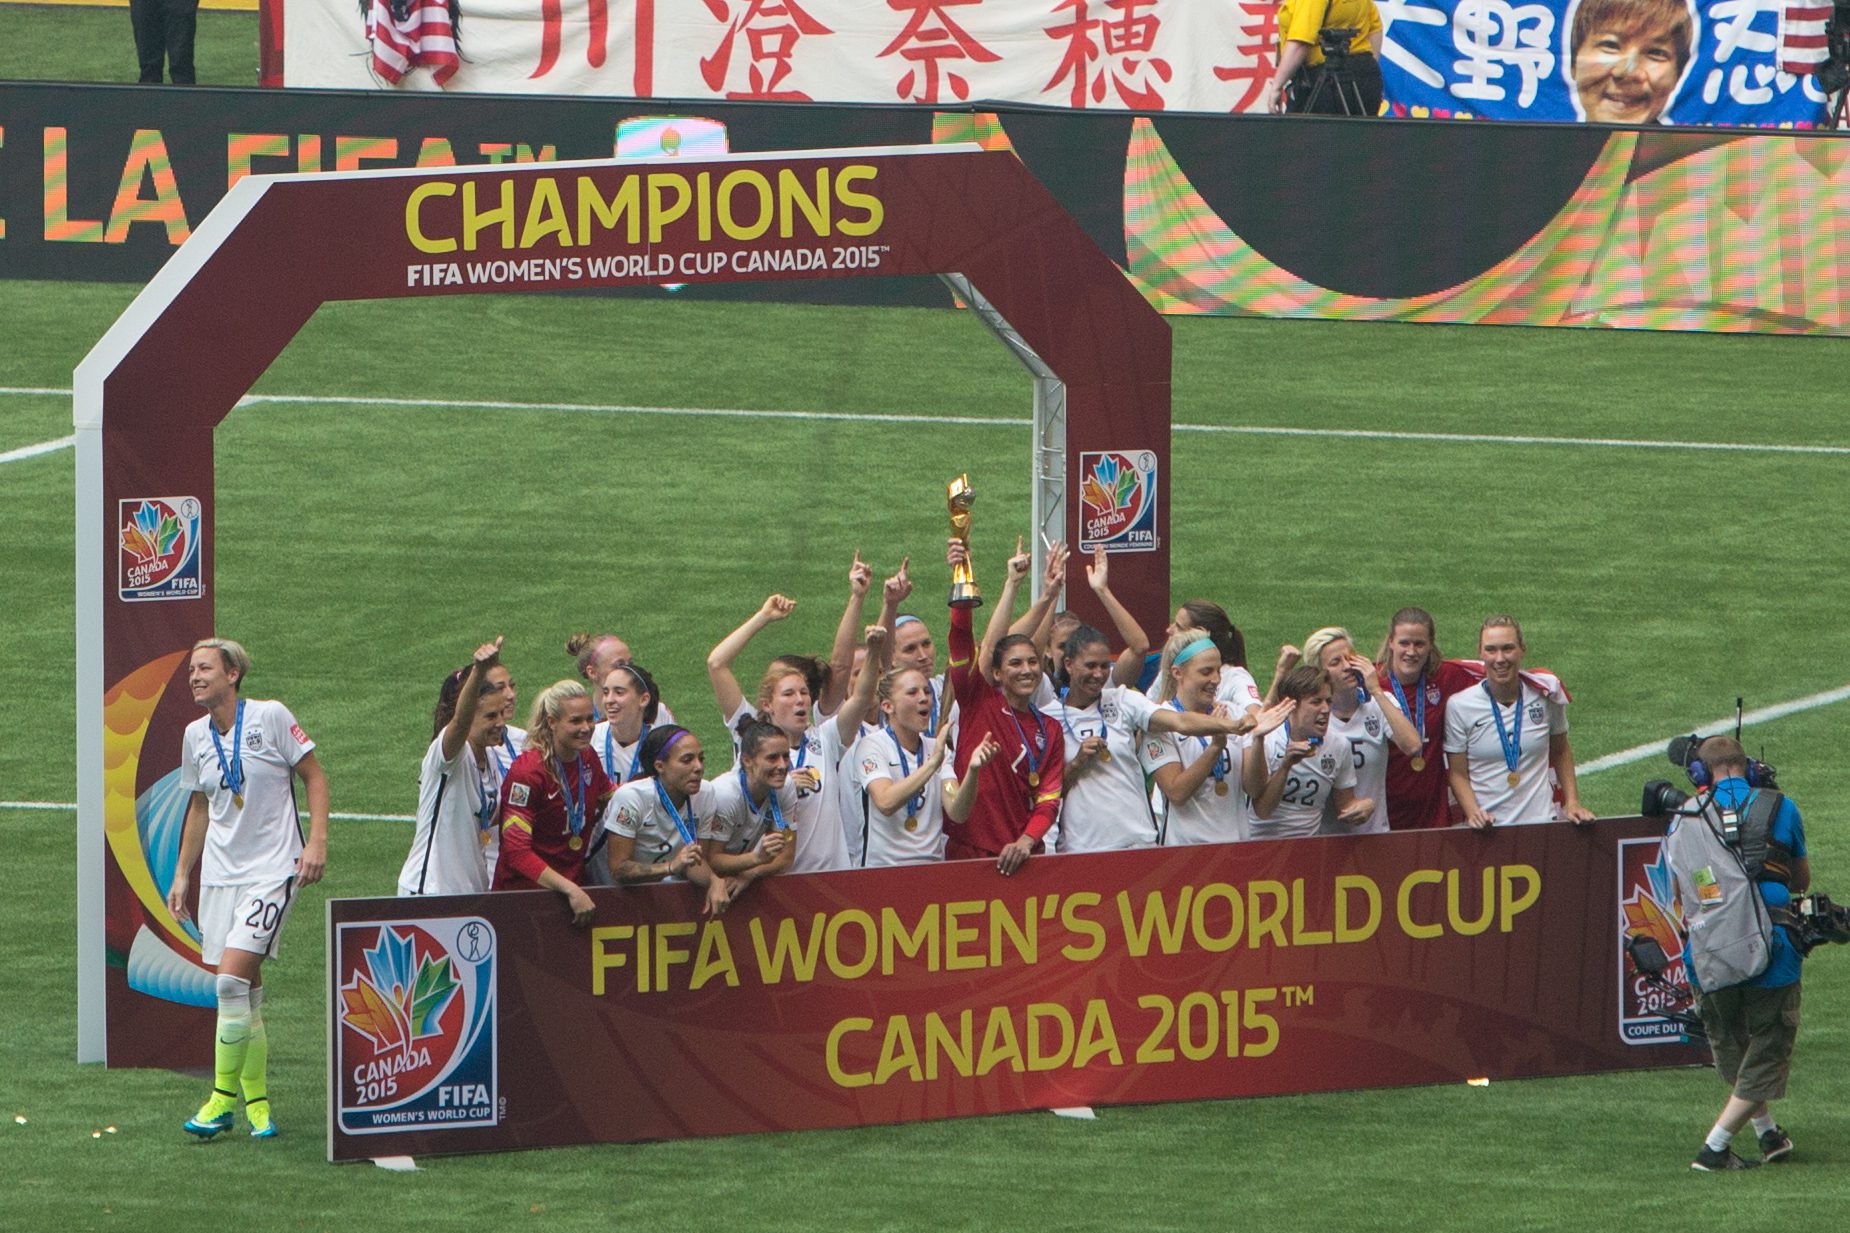 5 juillet 2015, les Américaines remportent leur troisième Coupe du monde de football